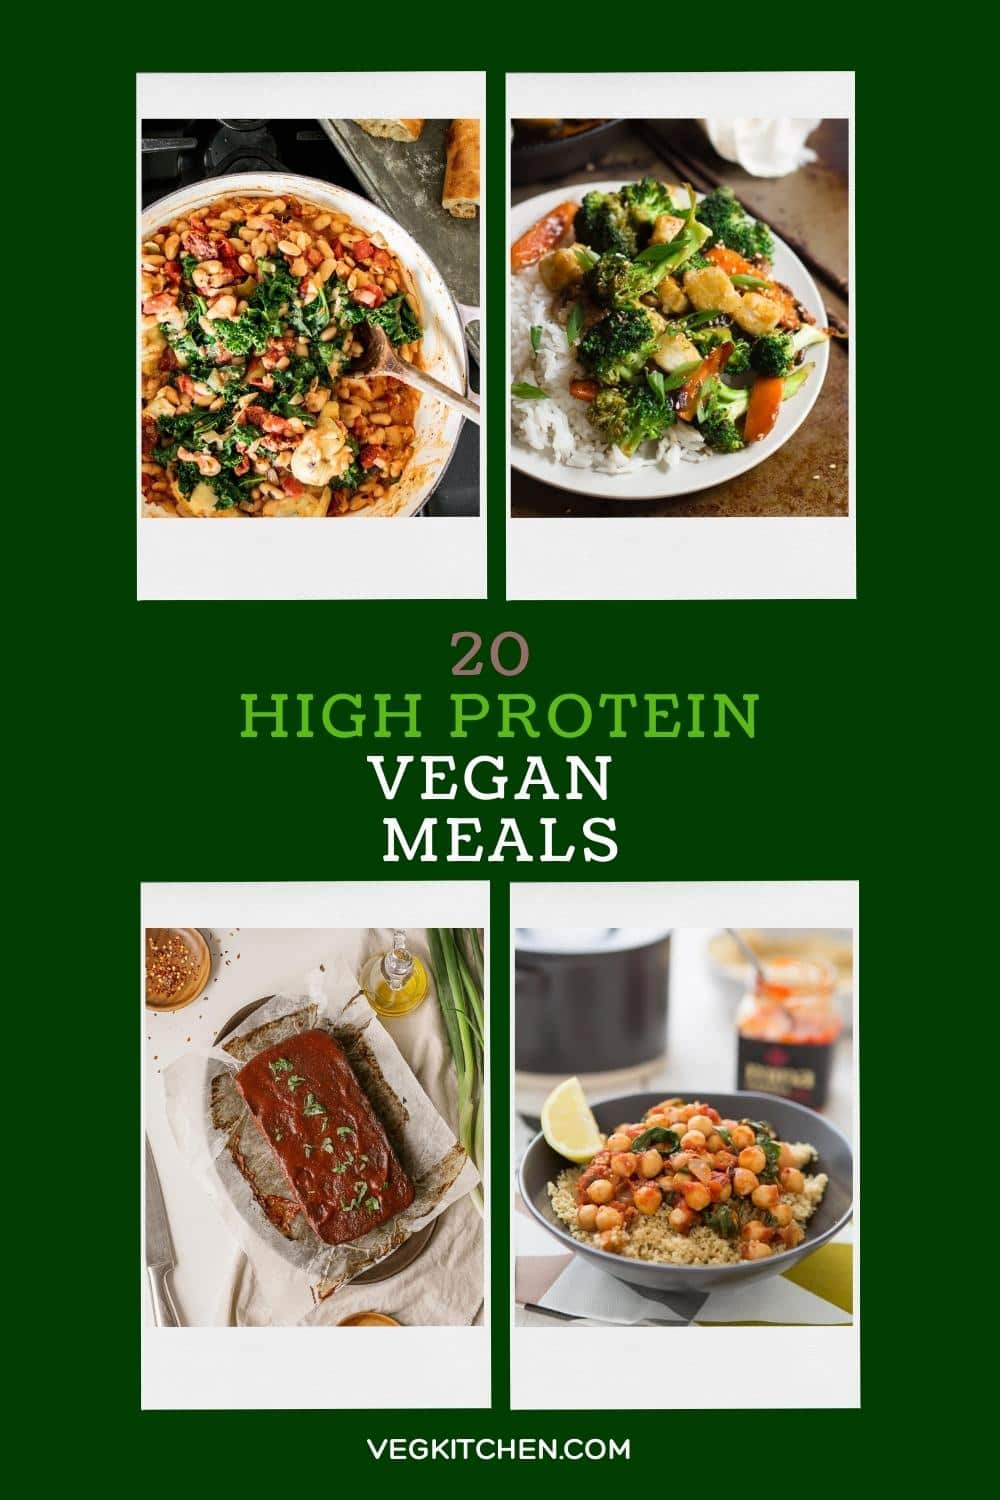 20 High Protein Vegan Meals - VegKitchen